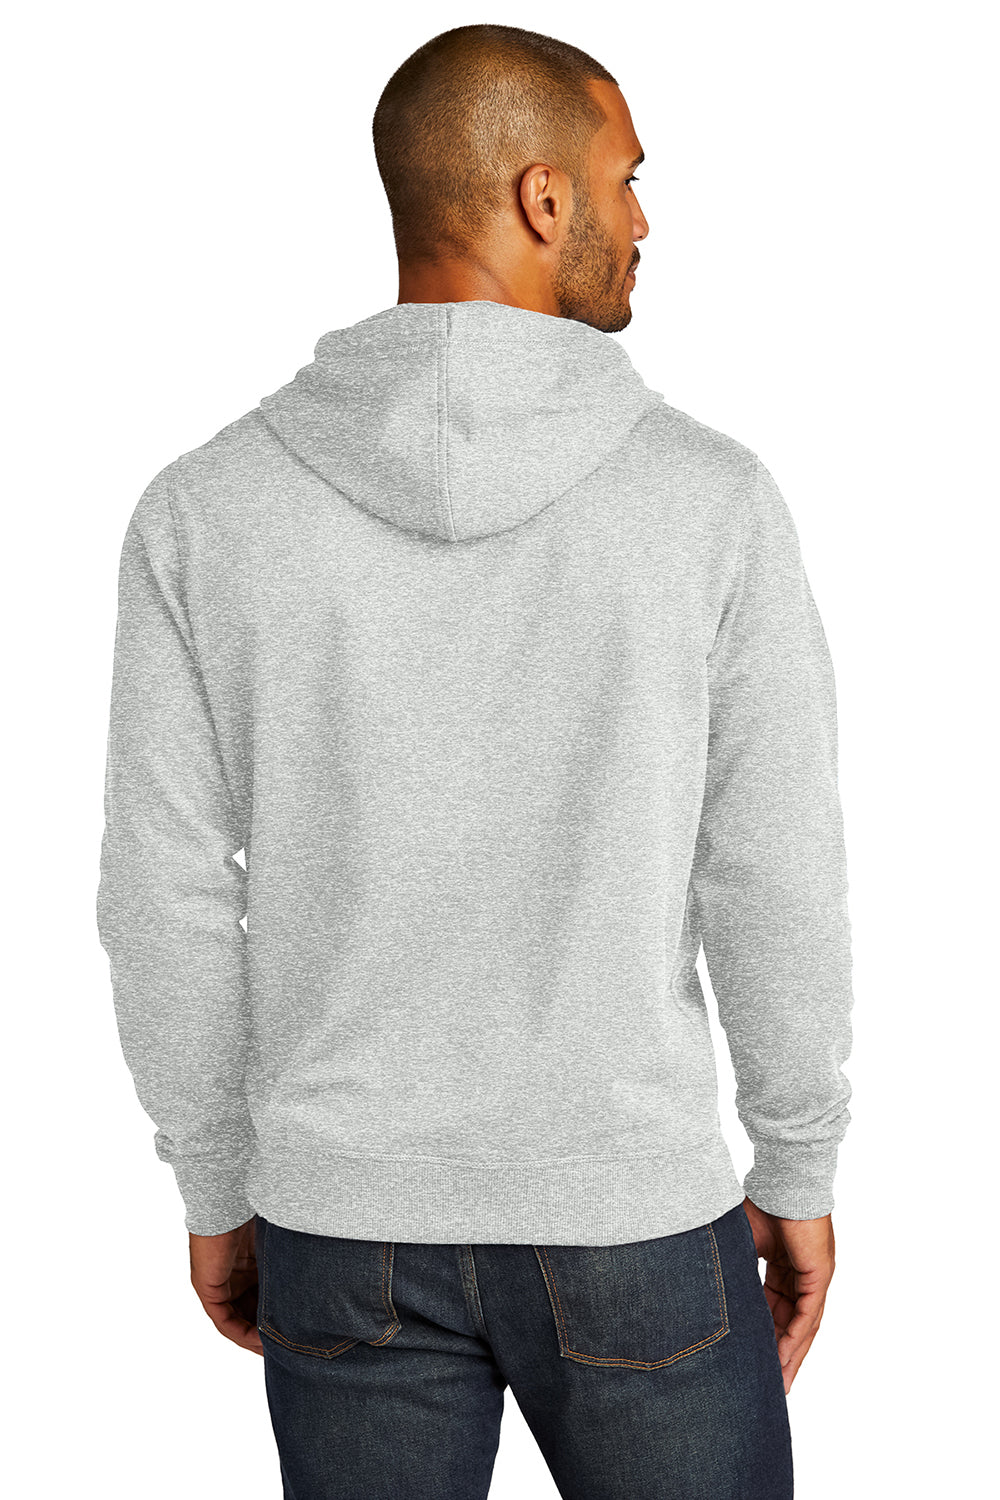 District DT8100 Mens Re-Fleece Hooded Sweatshirt Hoodie Ash Grey Back